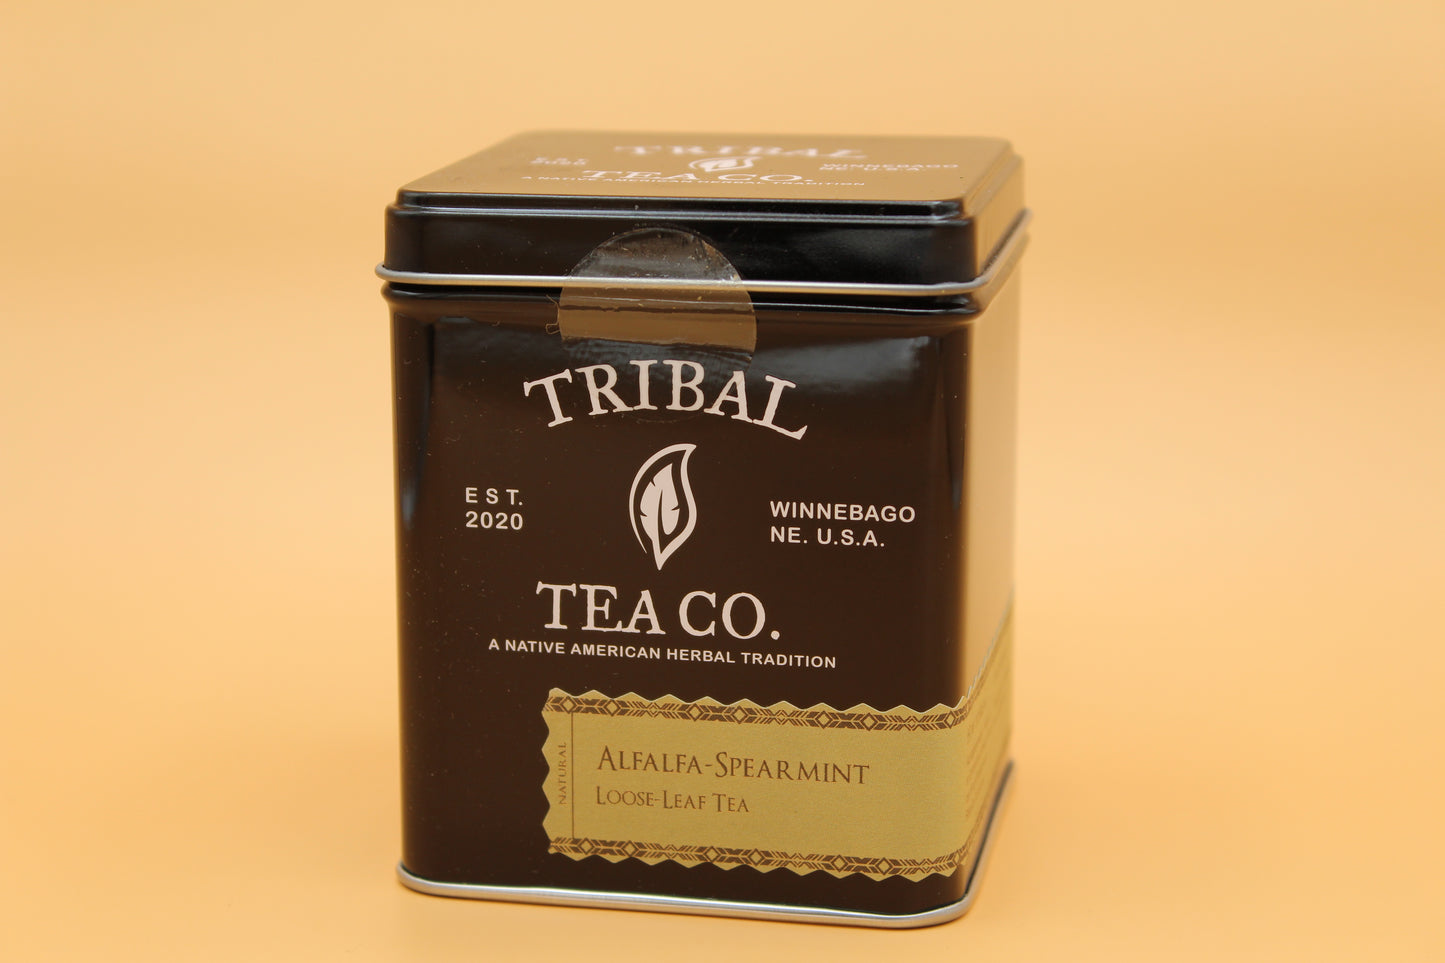 Alfalfa-Spearmint Herbal Tea (Loose-Leaf)